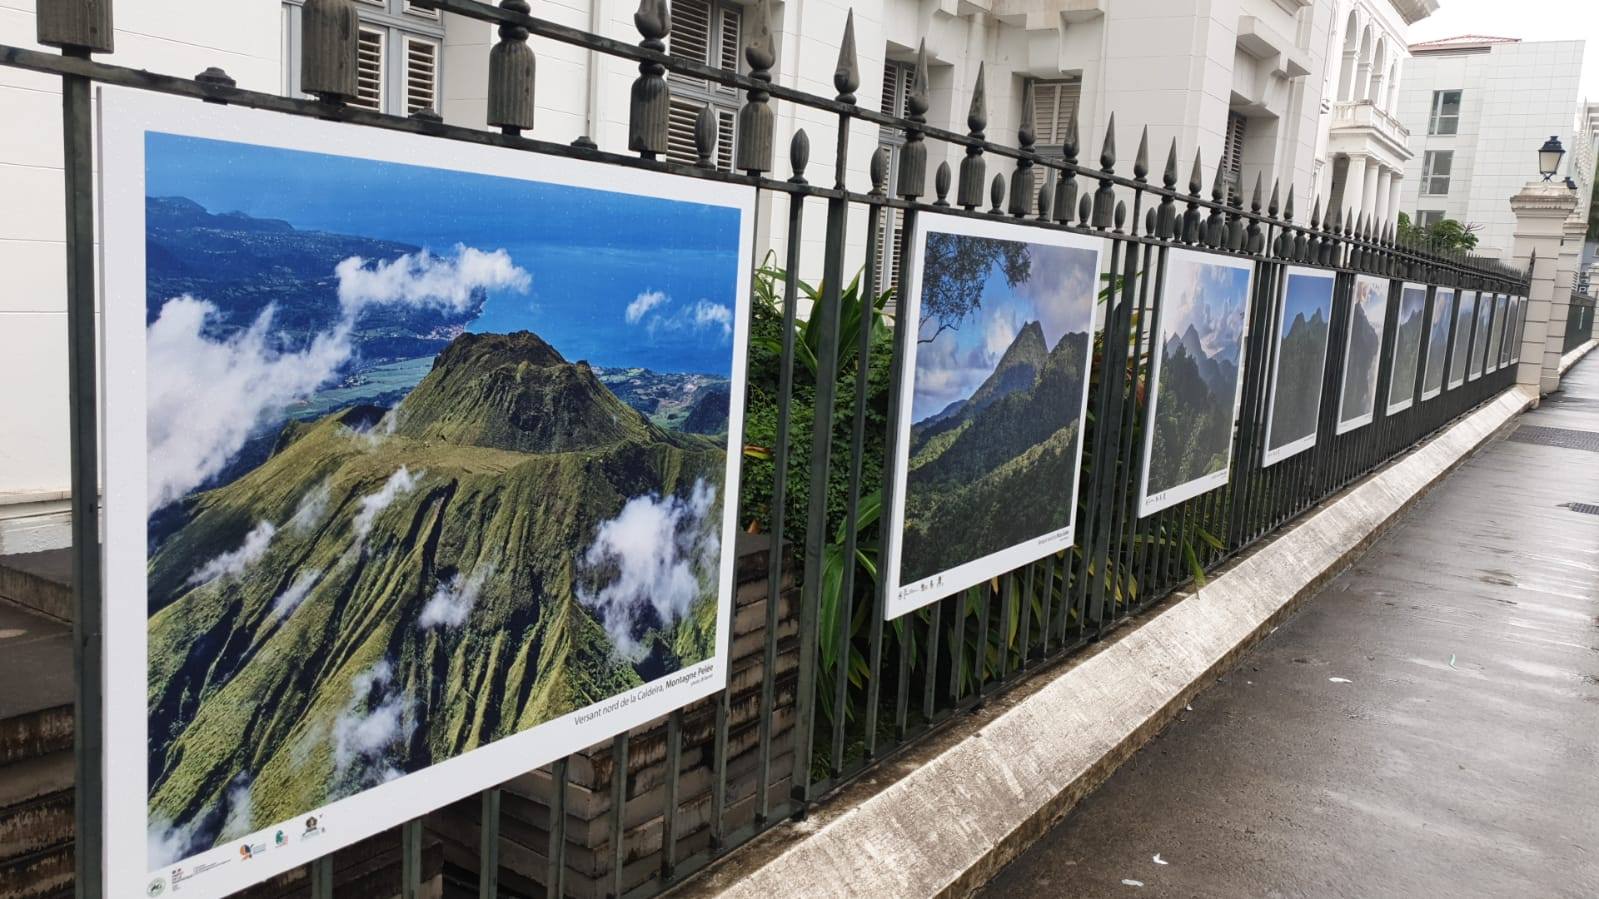     Les volcans de Martinique s'exposent sur les grilles de la préfecture

